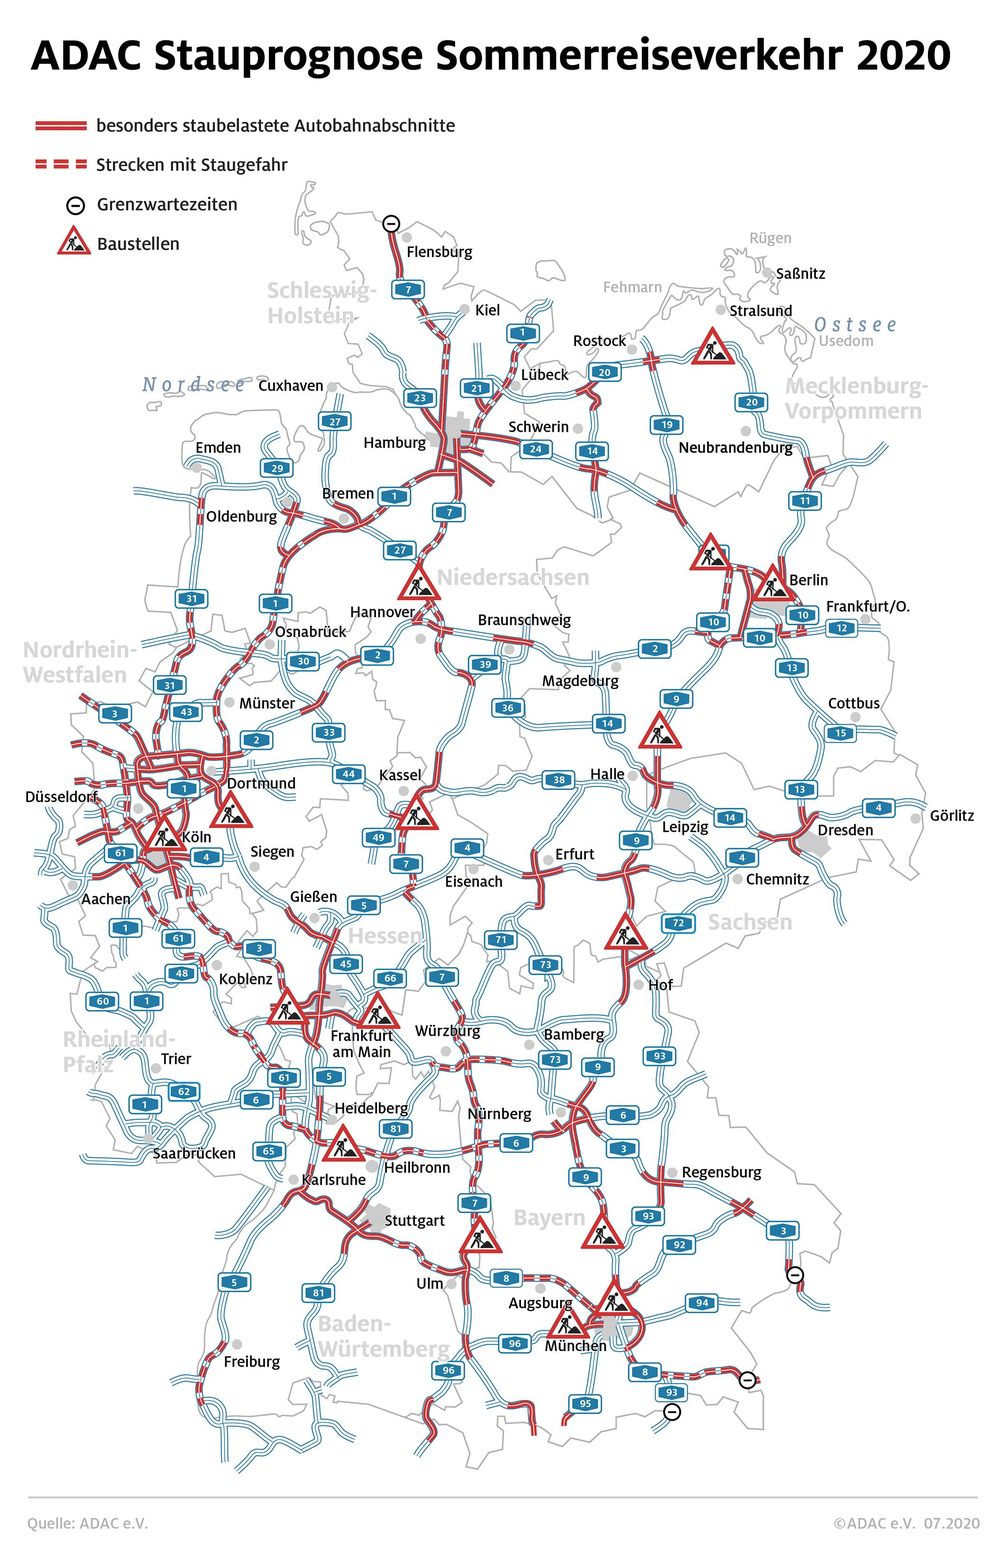 Die Situation auf Deutschlands Autobahnen in den Sommerferien  Bild: "obs/ADAC/ADAC e.V."